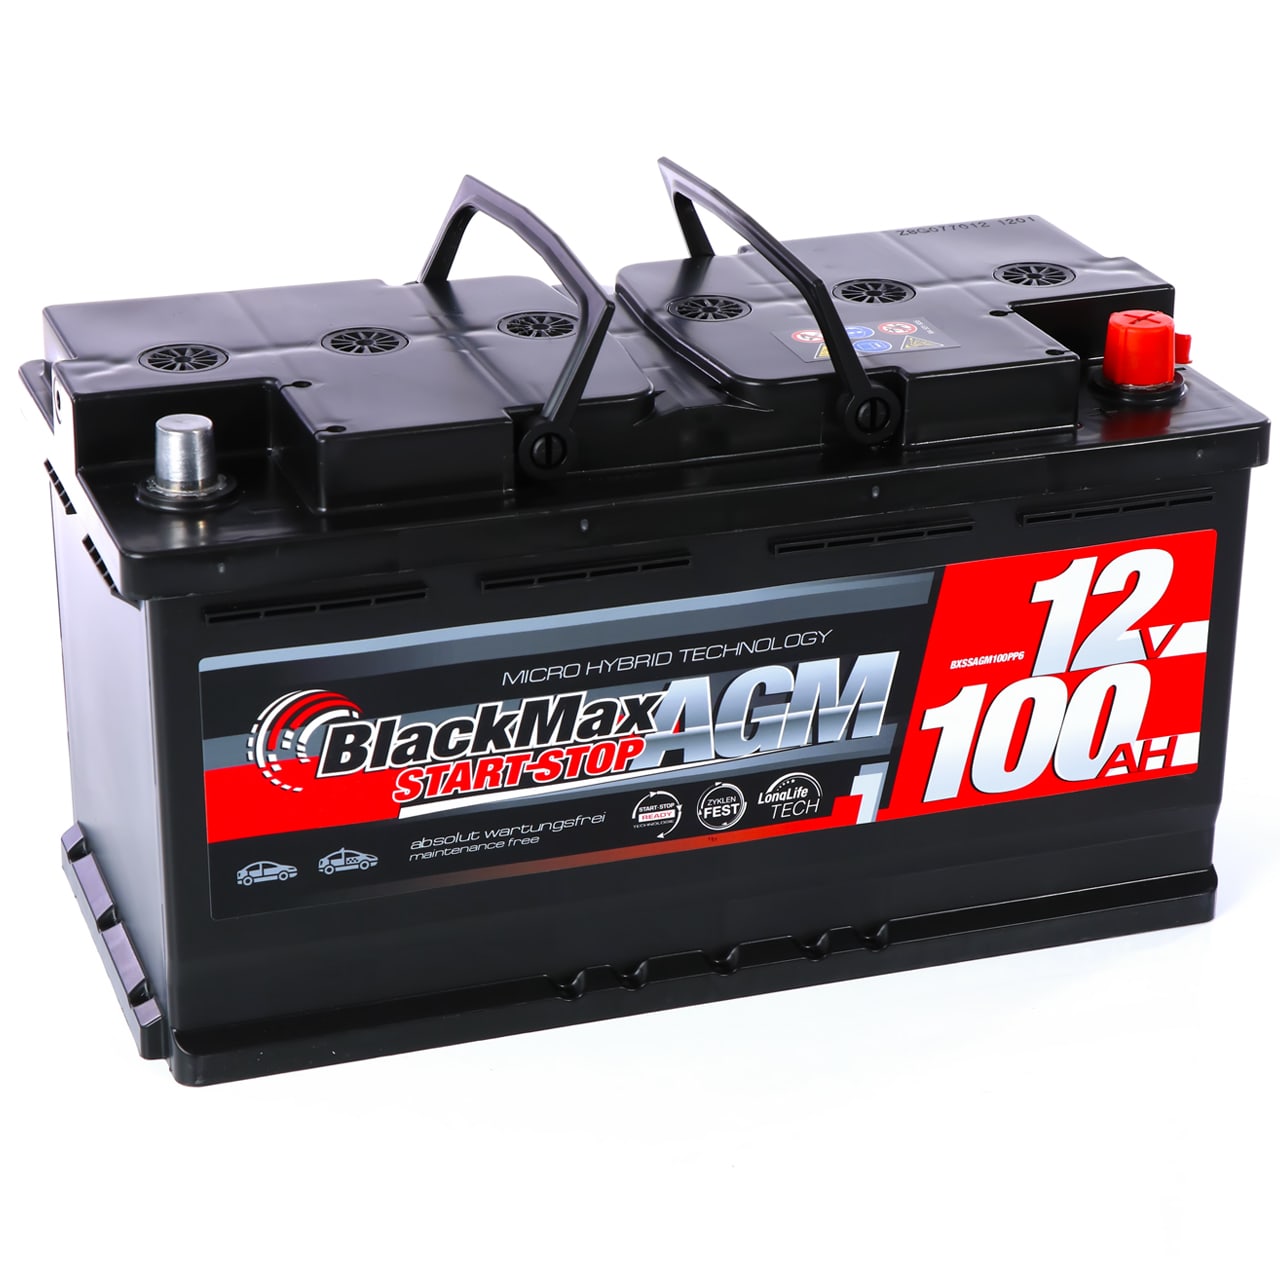 Autobatterie AGM 12V 100Ah BlackMax automotive für Start-Stop 95Ah, 92Ah